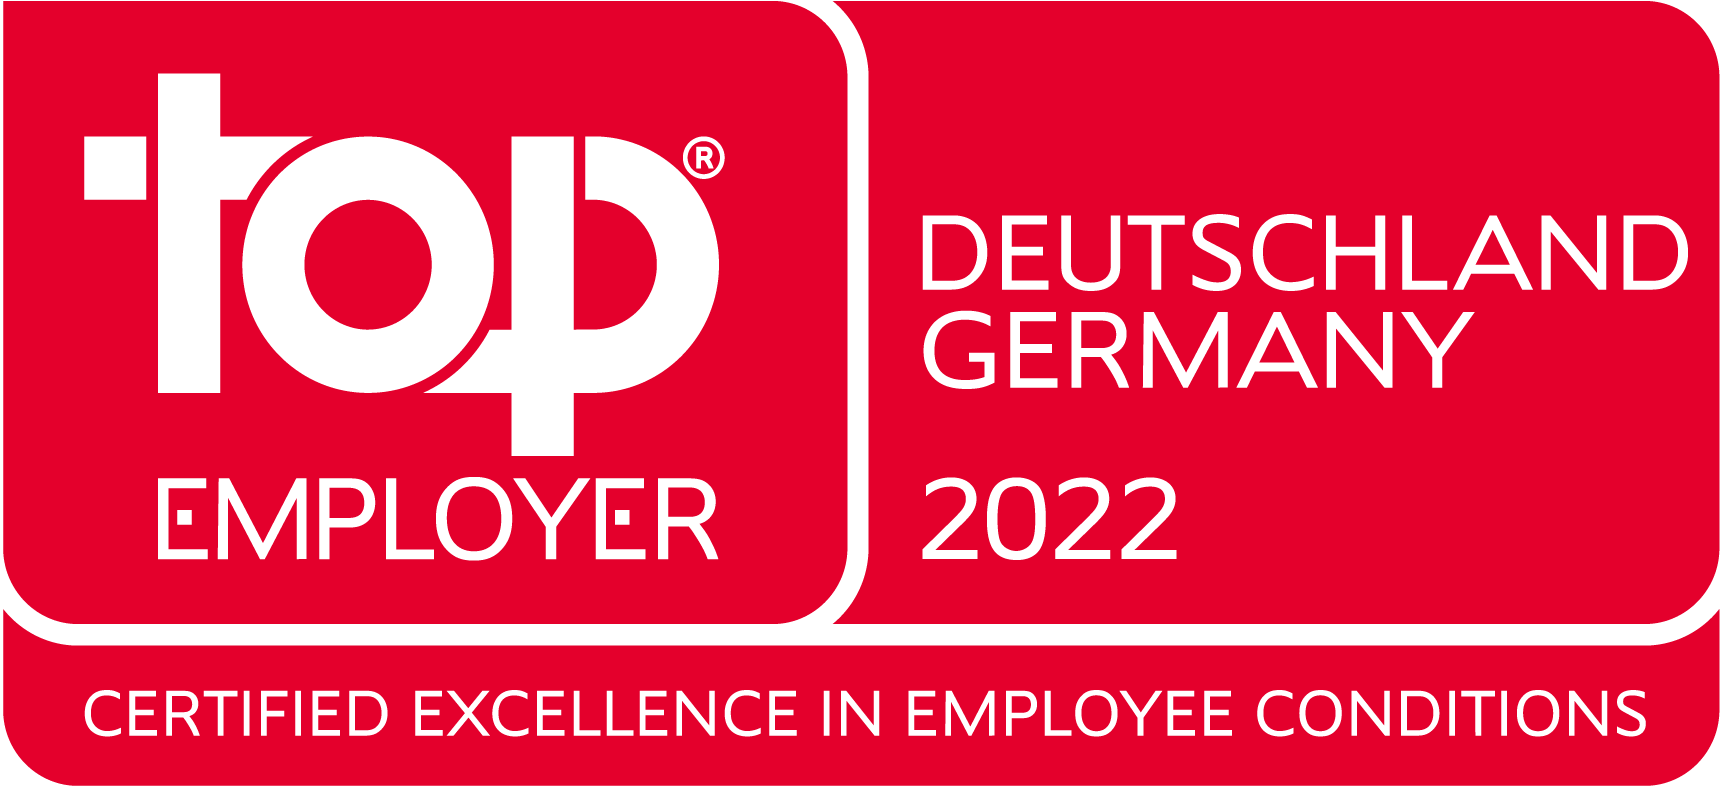 Top Employer Deutschland 2022